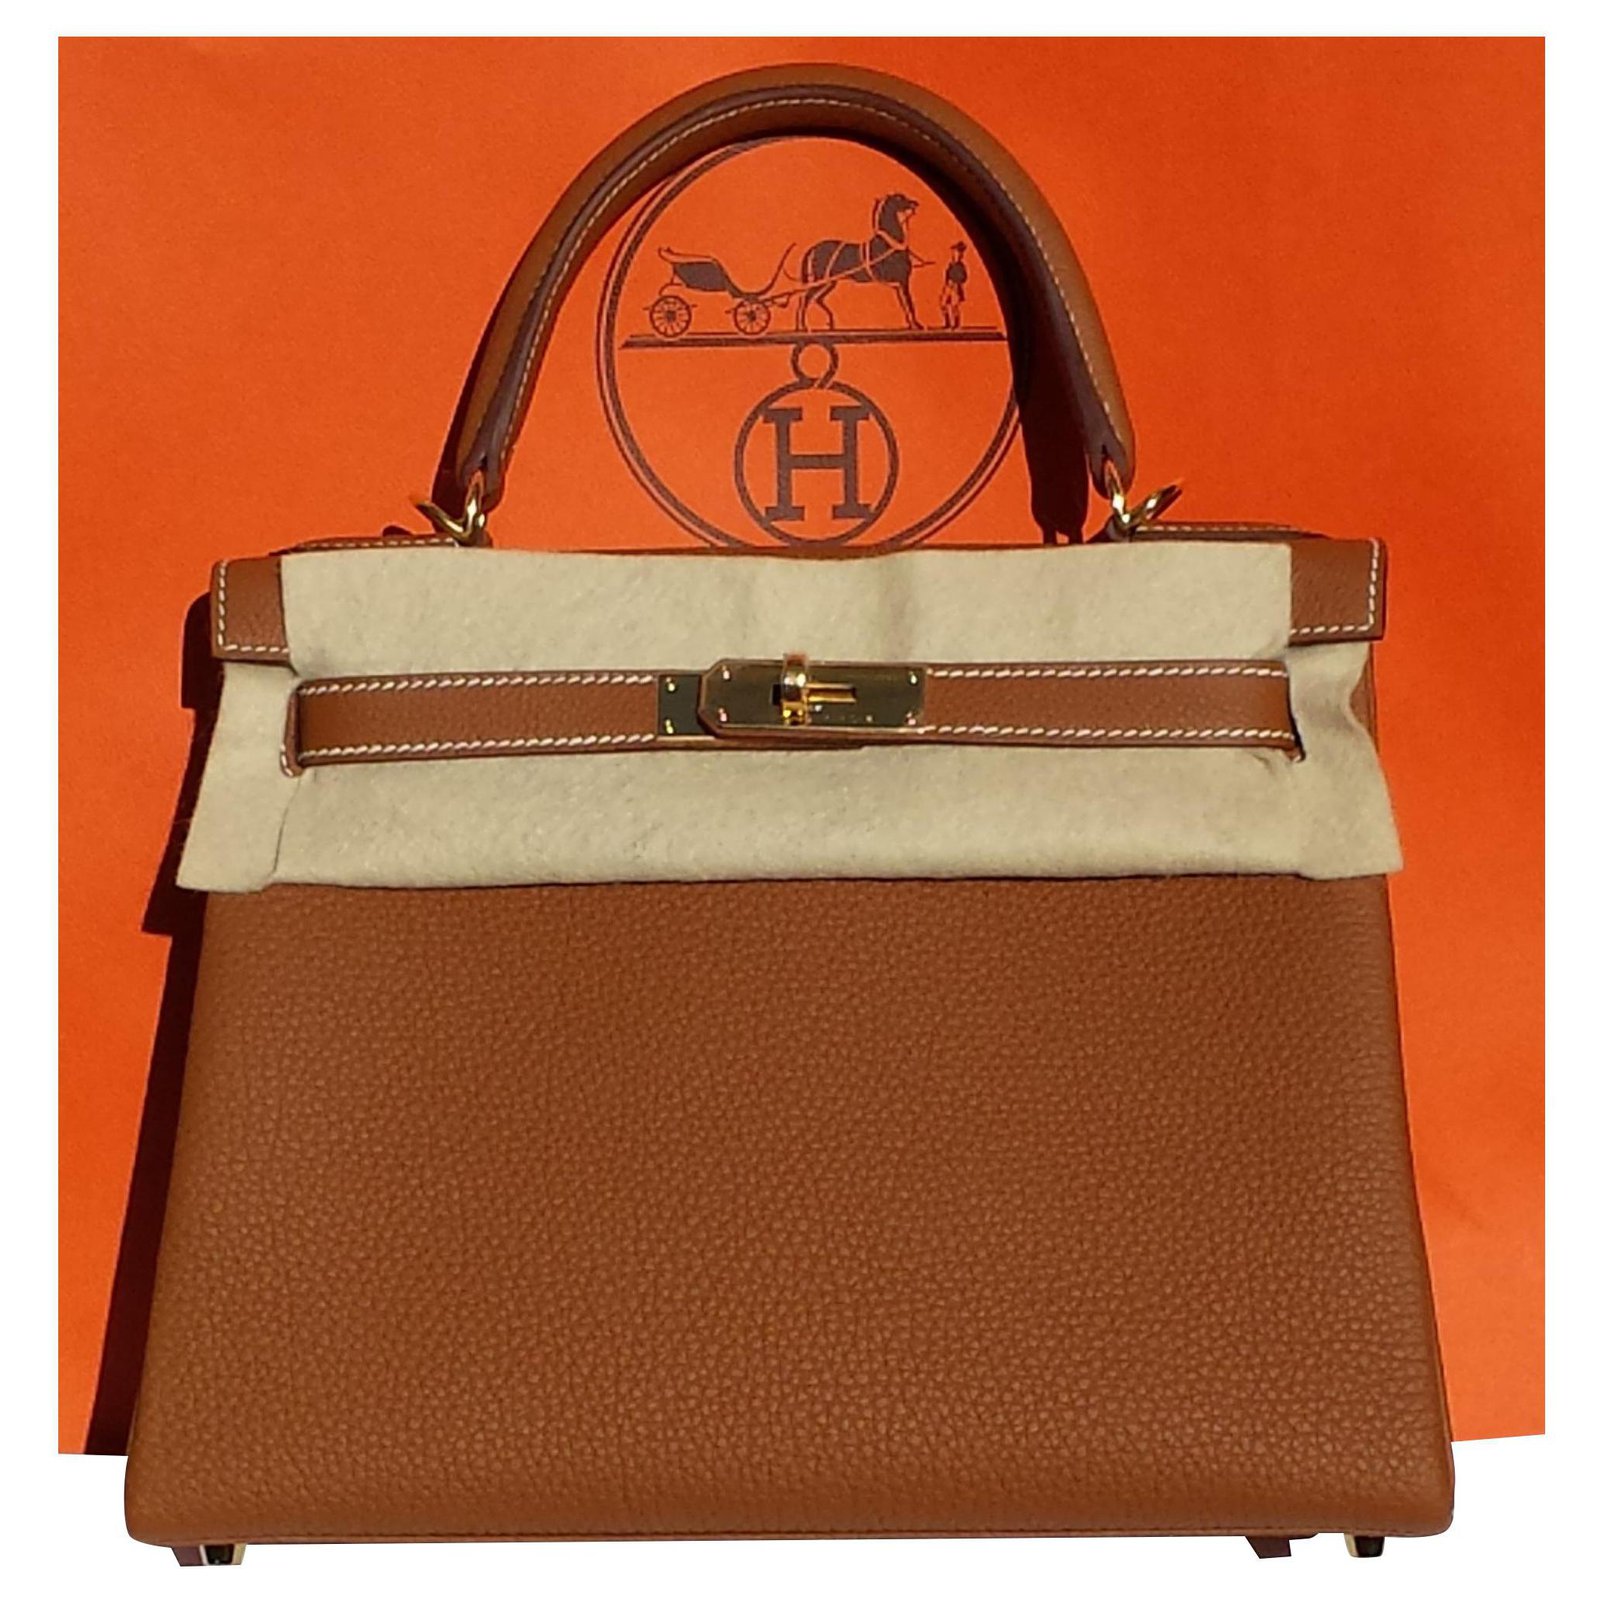 Hermès Kelly Rose Gold Bag